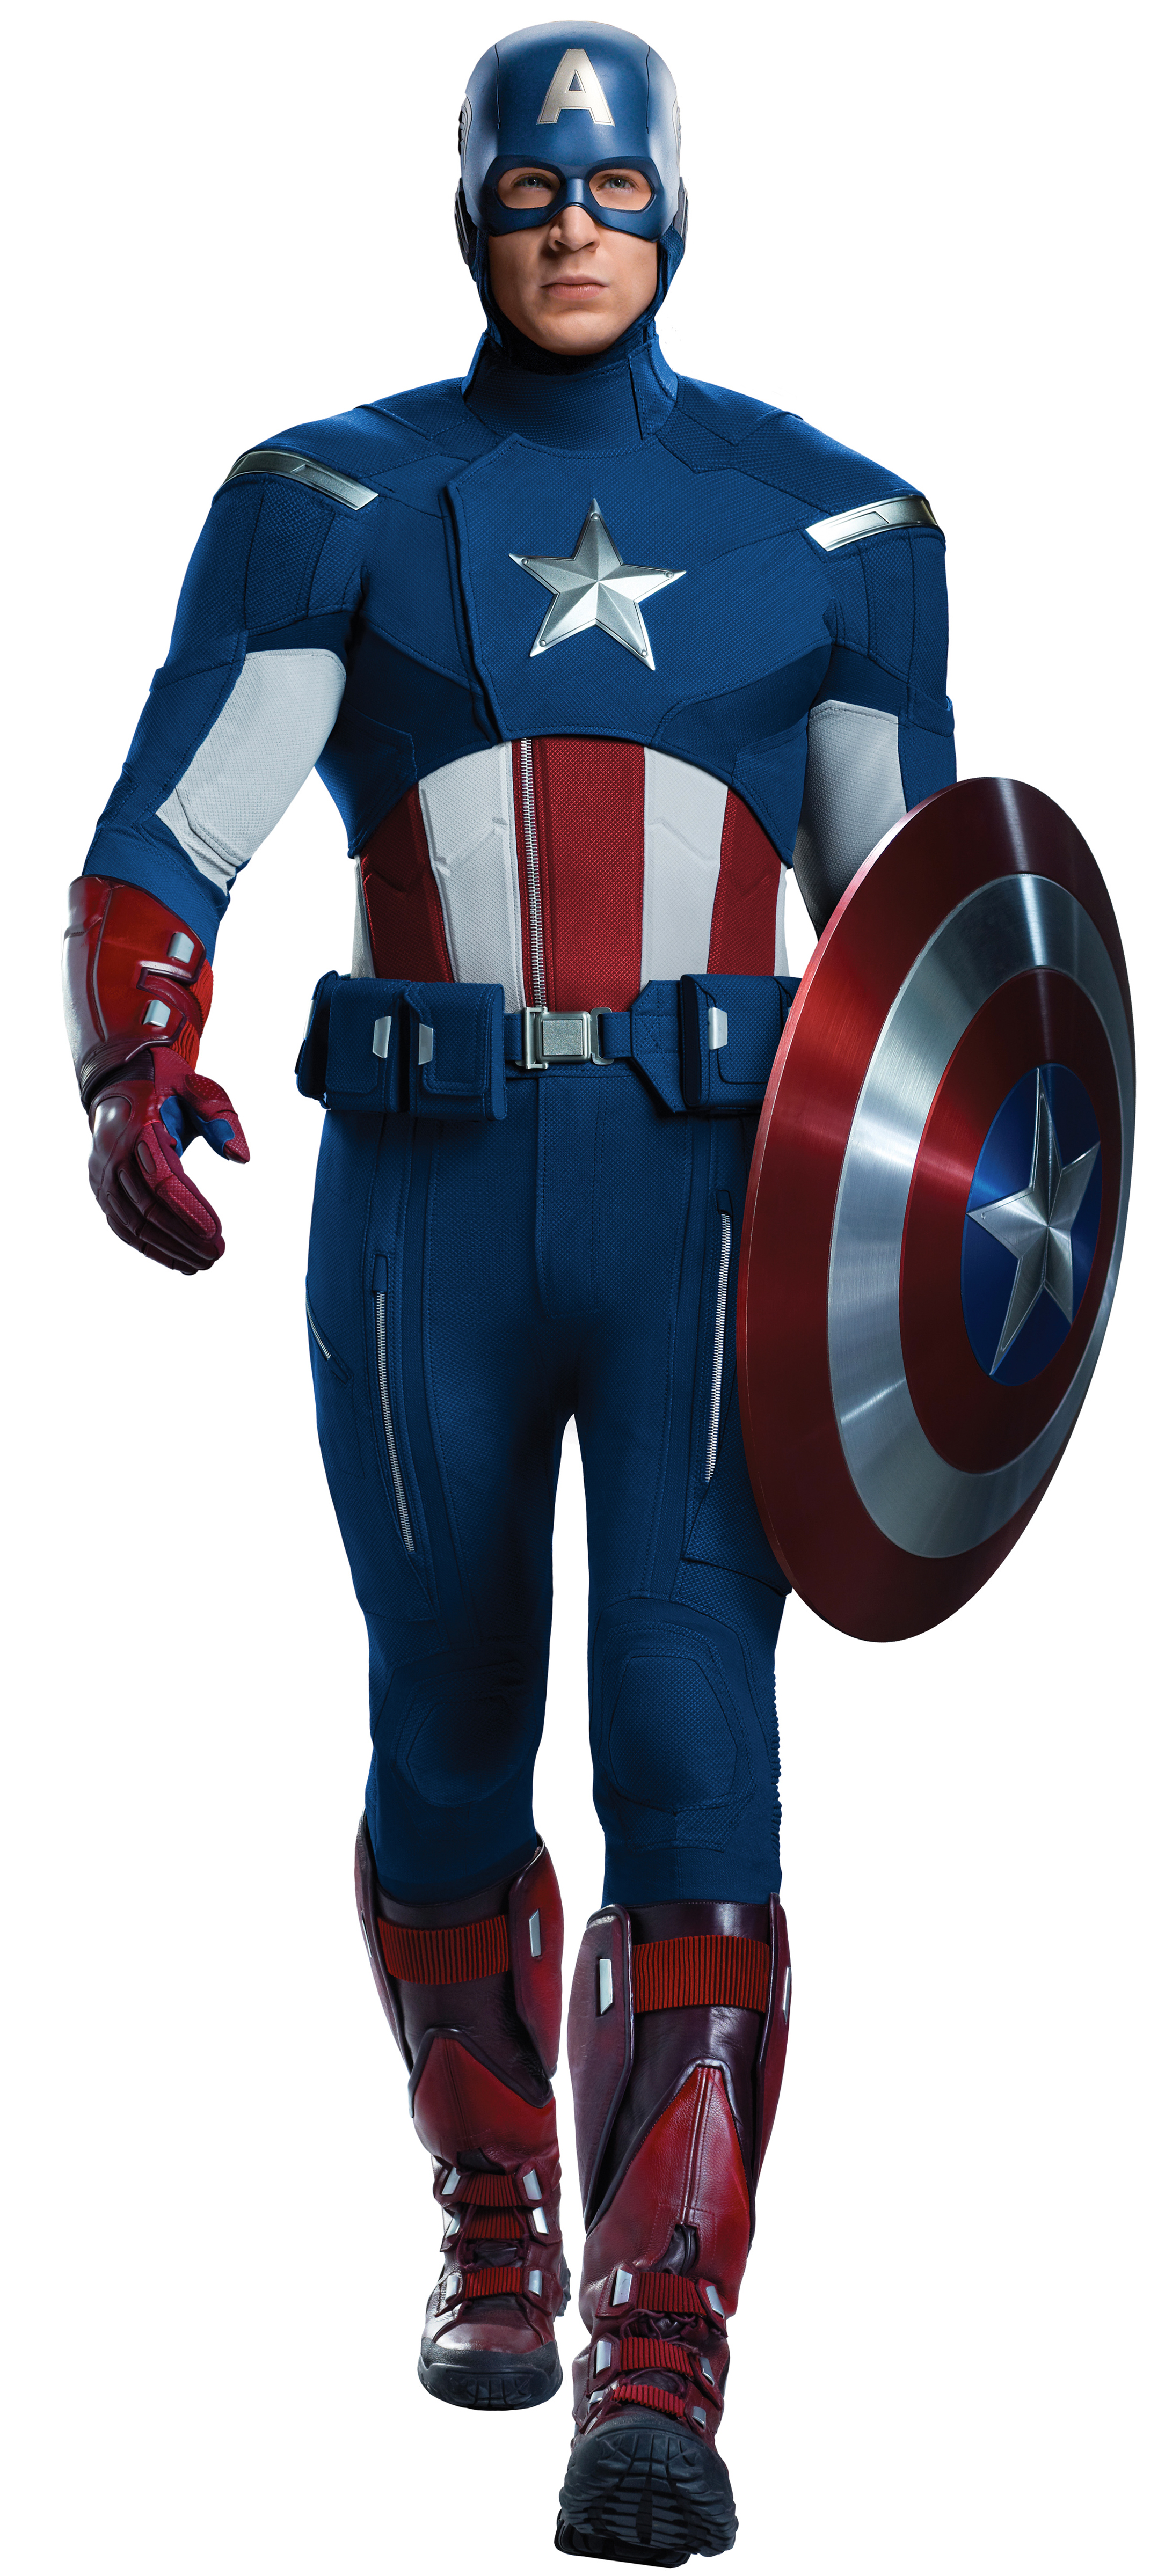 Captain America Backgrounds, Compatible - PC, Mobile, Gadgets| 2170x4800 px